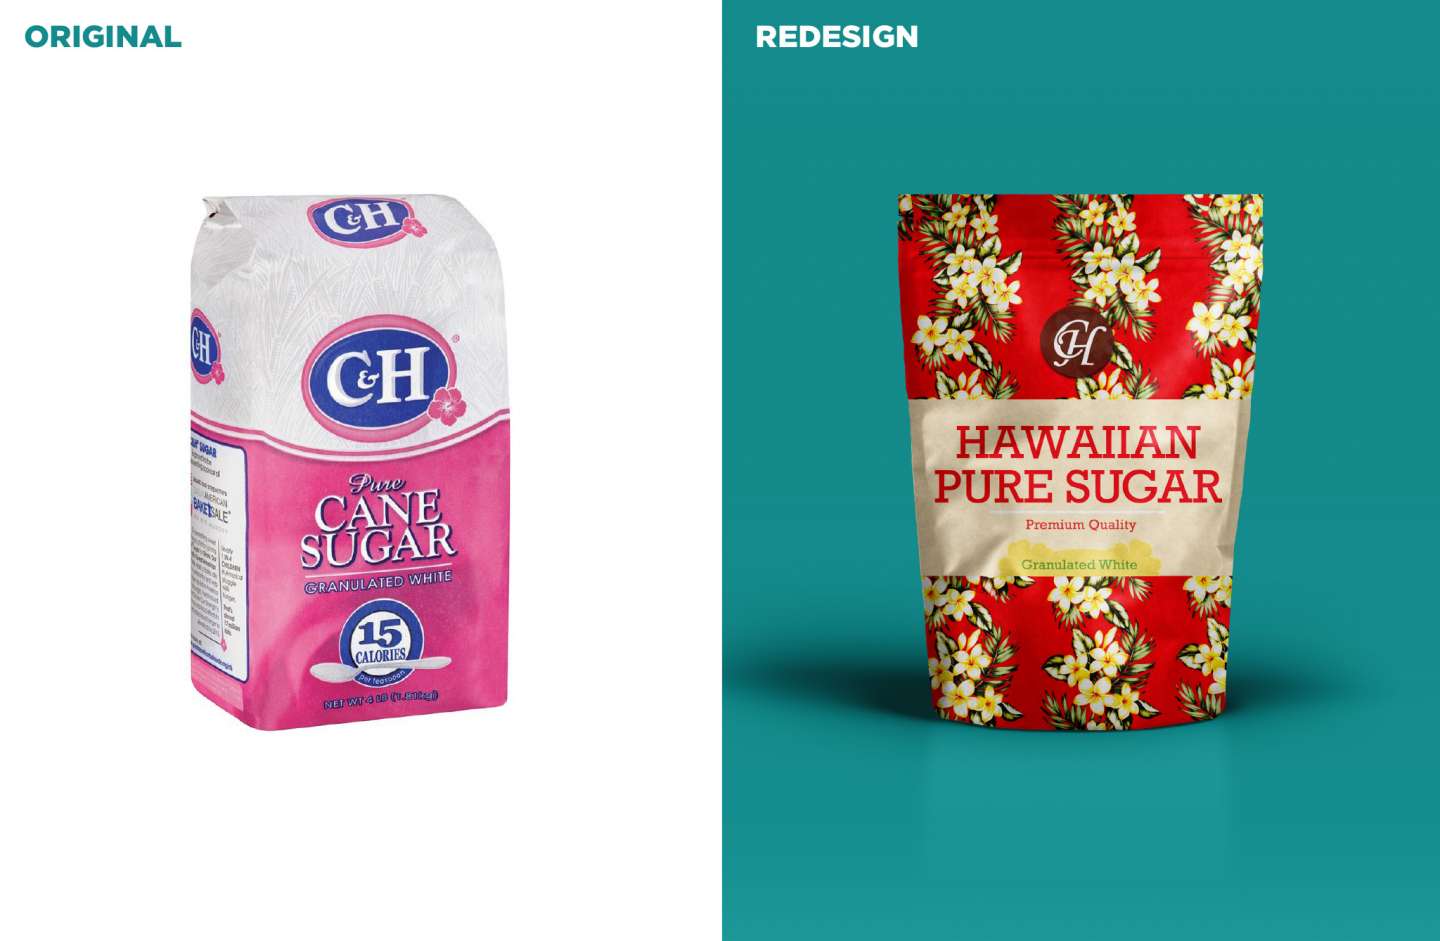 C&H Sugar Redesign